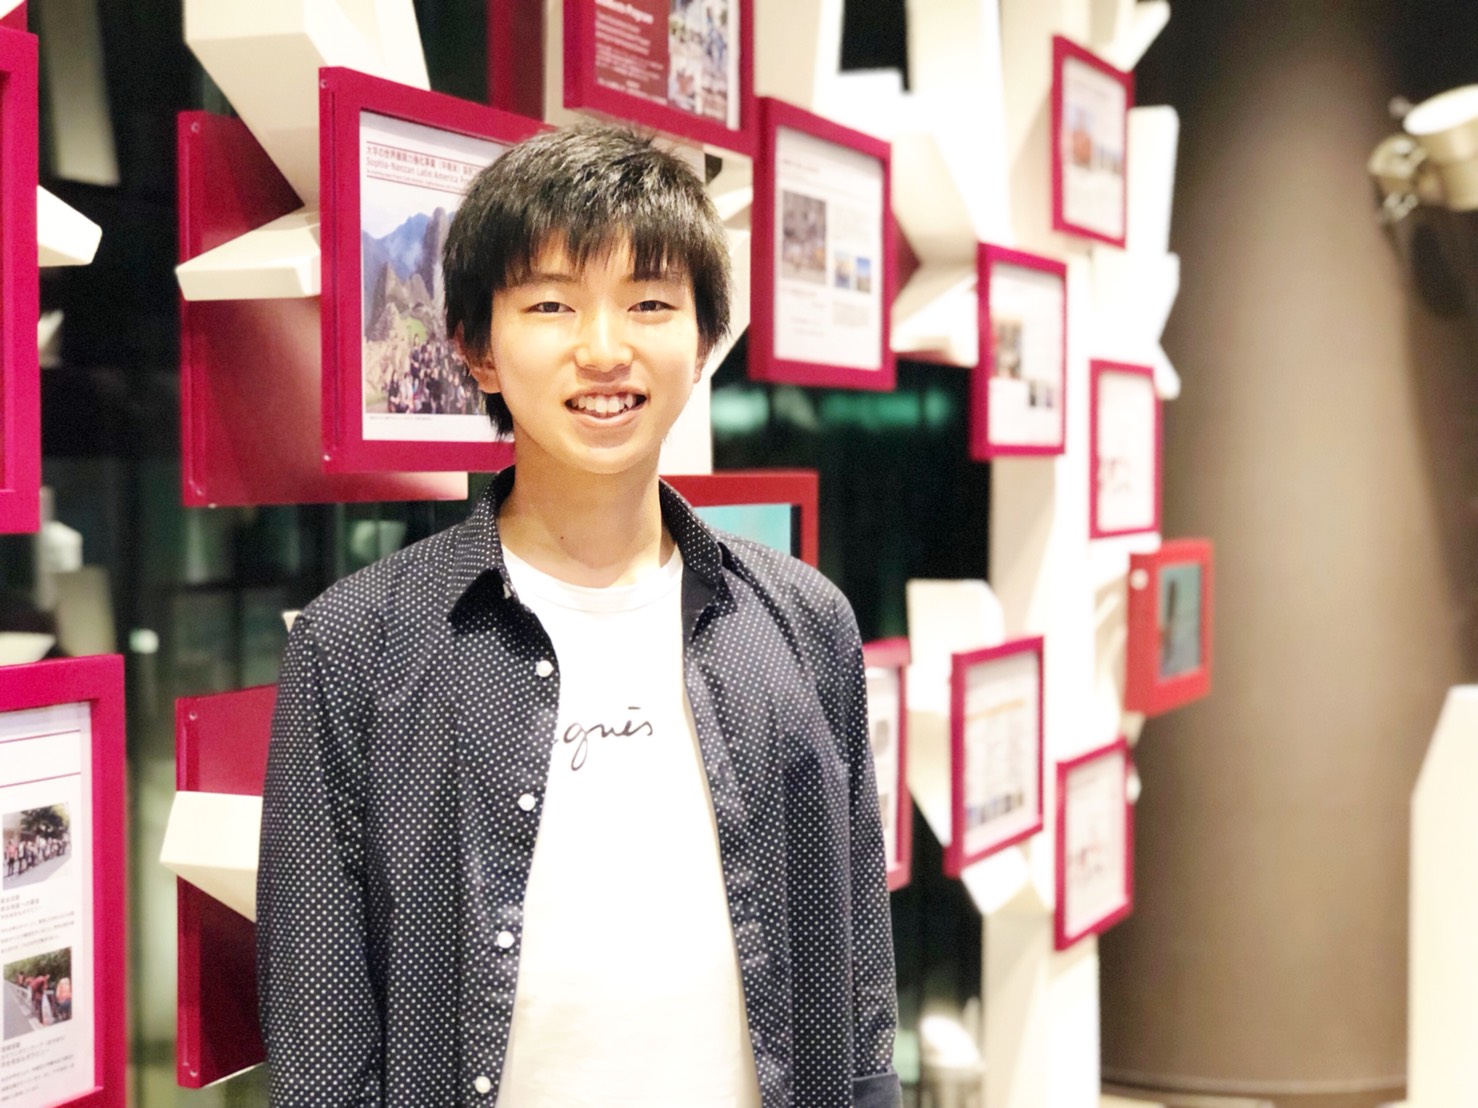 上智大学公認ボランティアサークルの「めぐこ」2018年度代表の山田蒼太です。